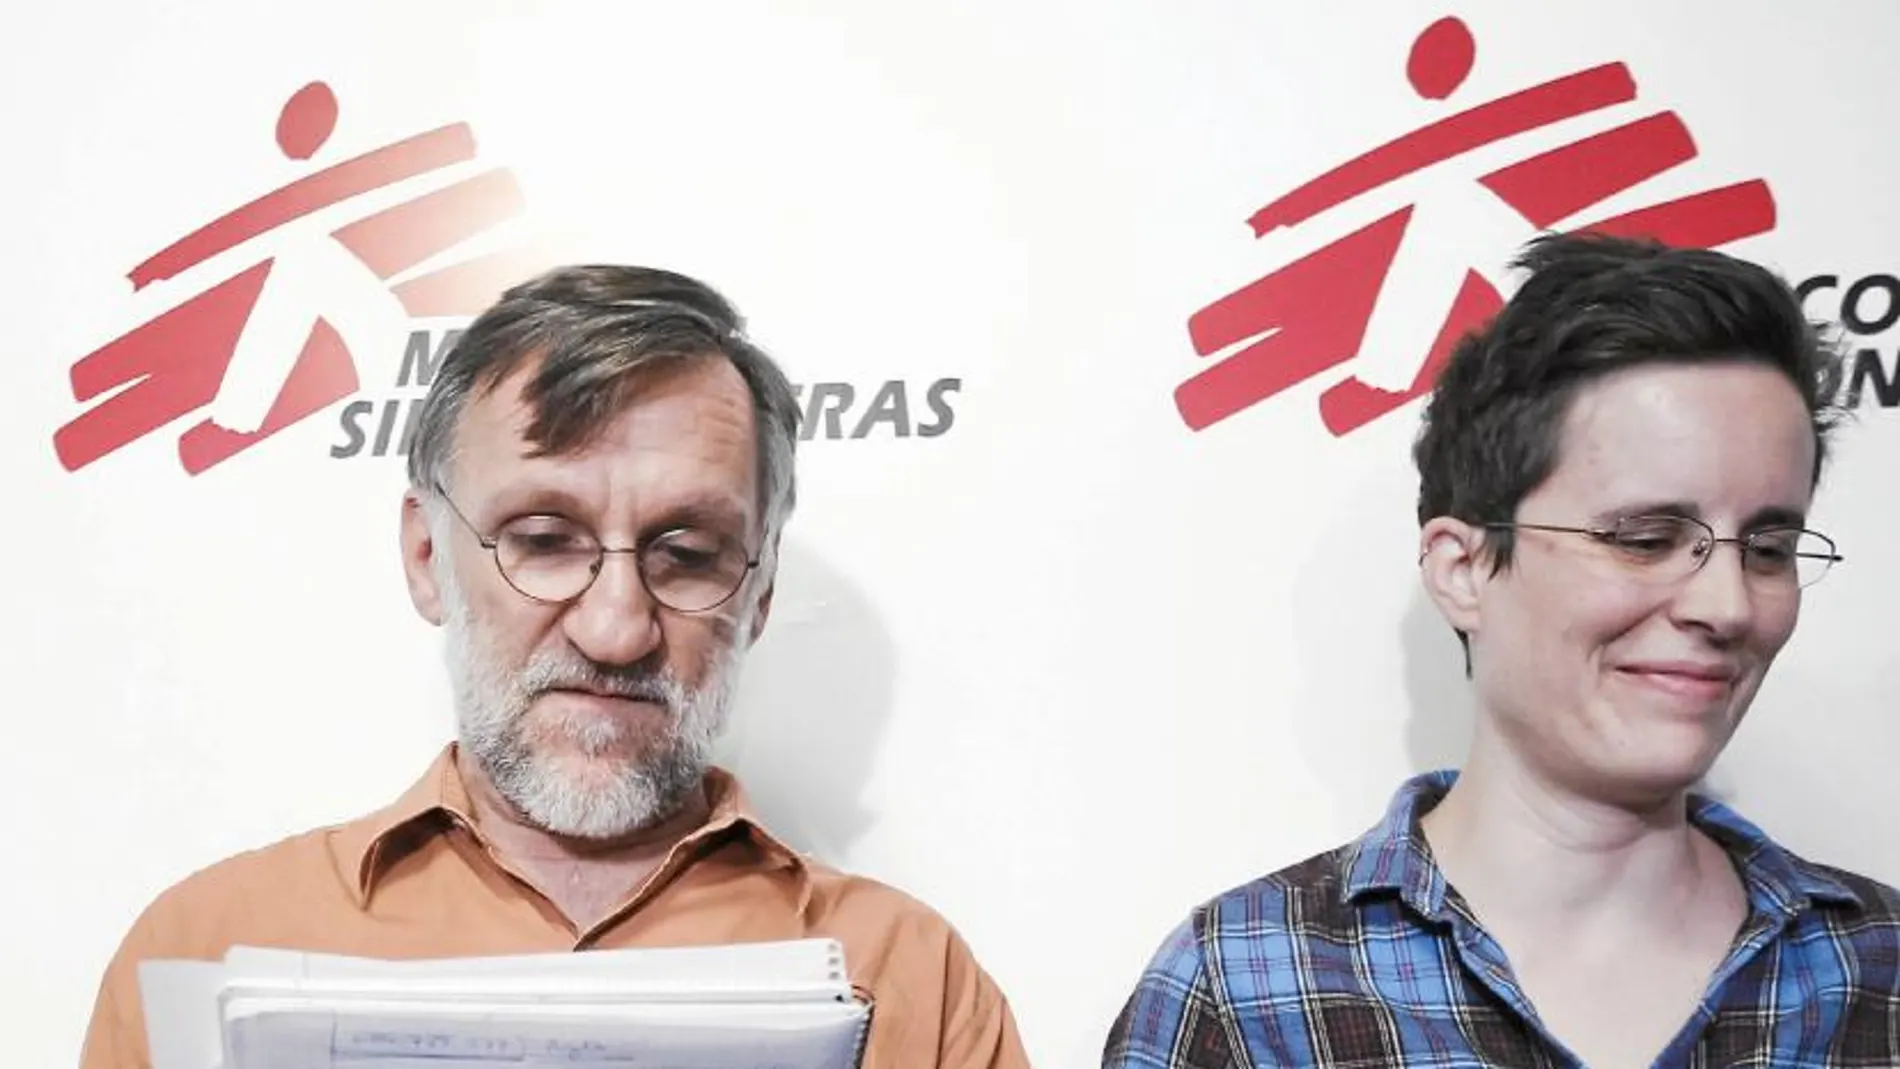 El presidente de MSF, José Antonio Bastos, junto a Inés Thiebaut